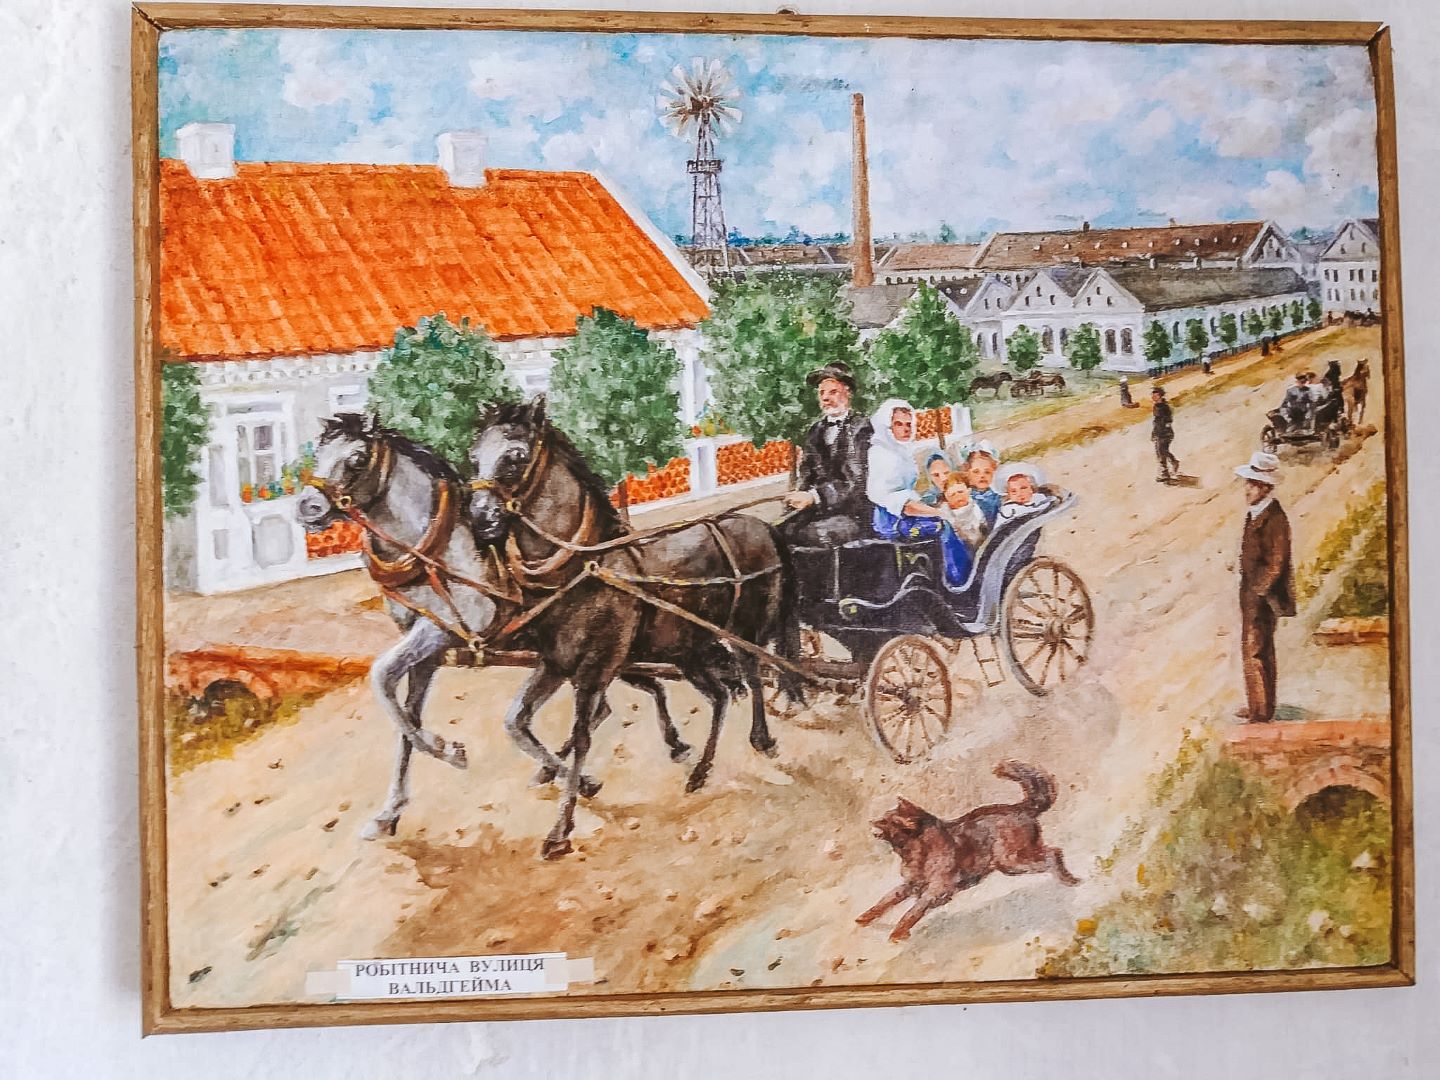 Картини у музеї в селі Владівка